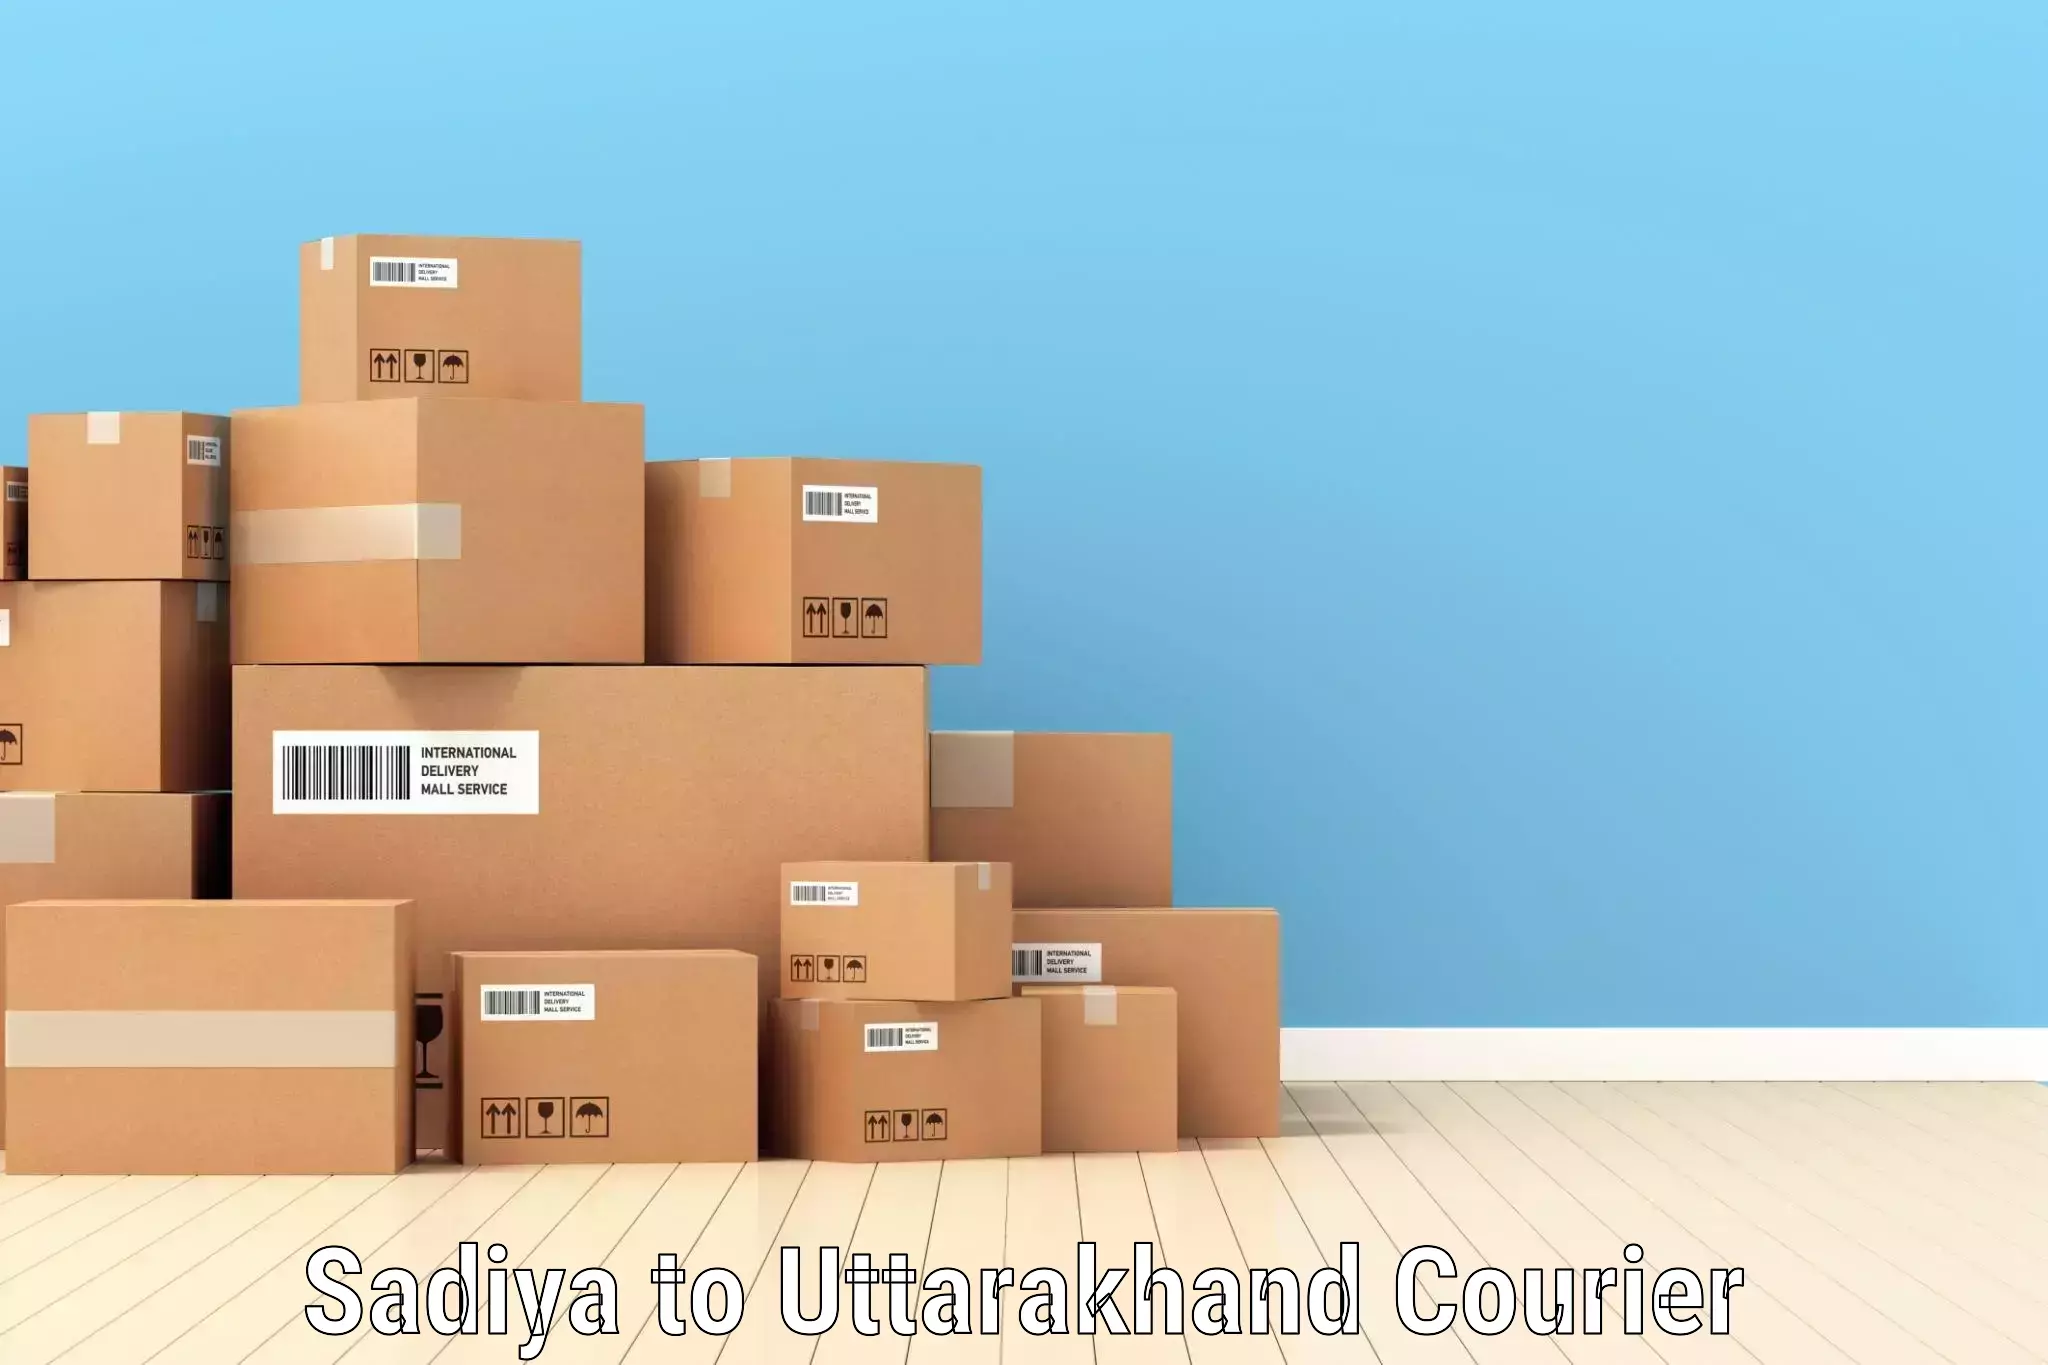 Large package courier Sadiya to Uttarkashi